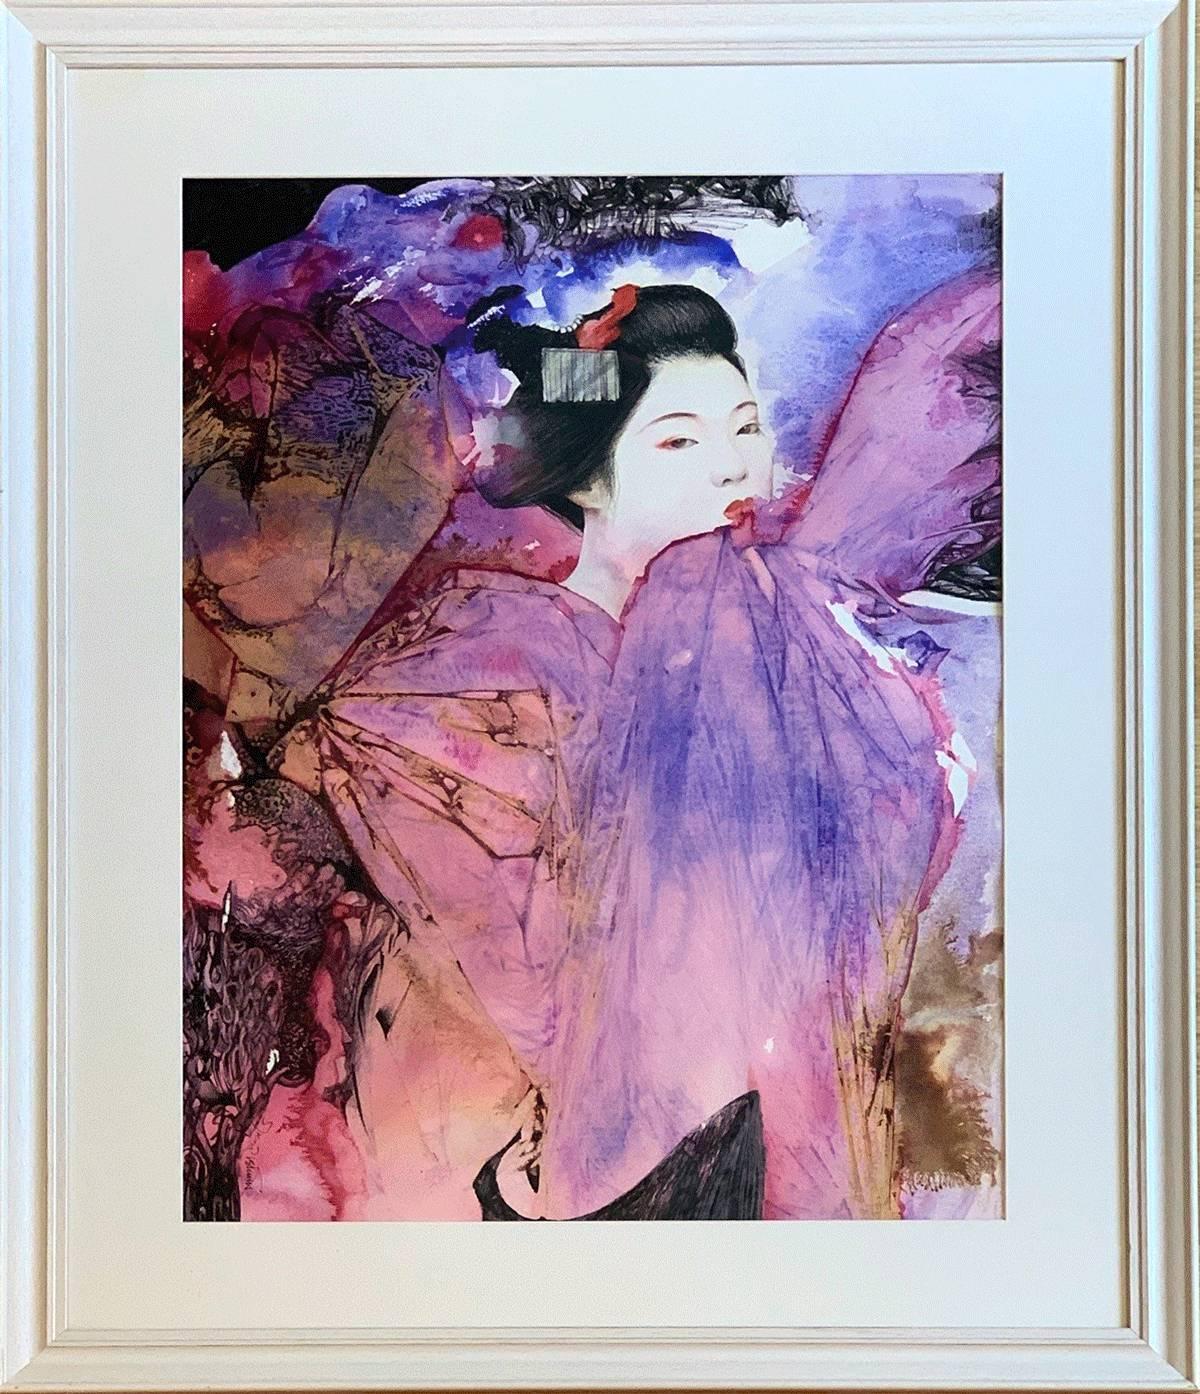 Maiko - papier à aquarelle à l'encre rose contemporain coloré Geisha, peinture à l'aquarelle - Painting de Stephen and Lorna Kirin